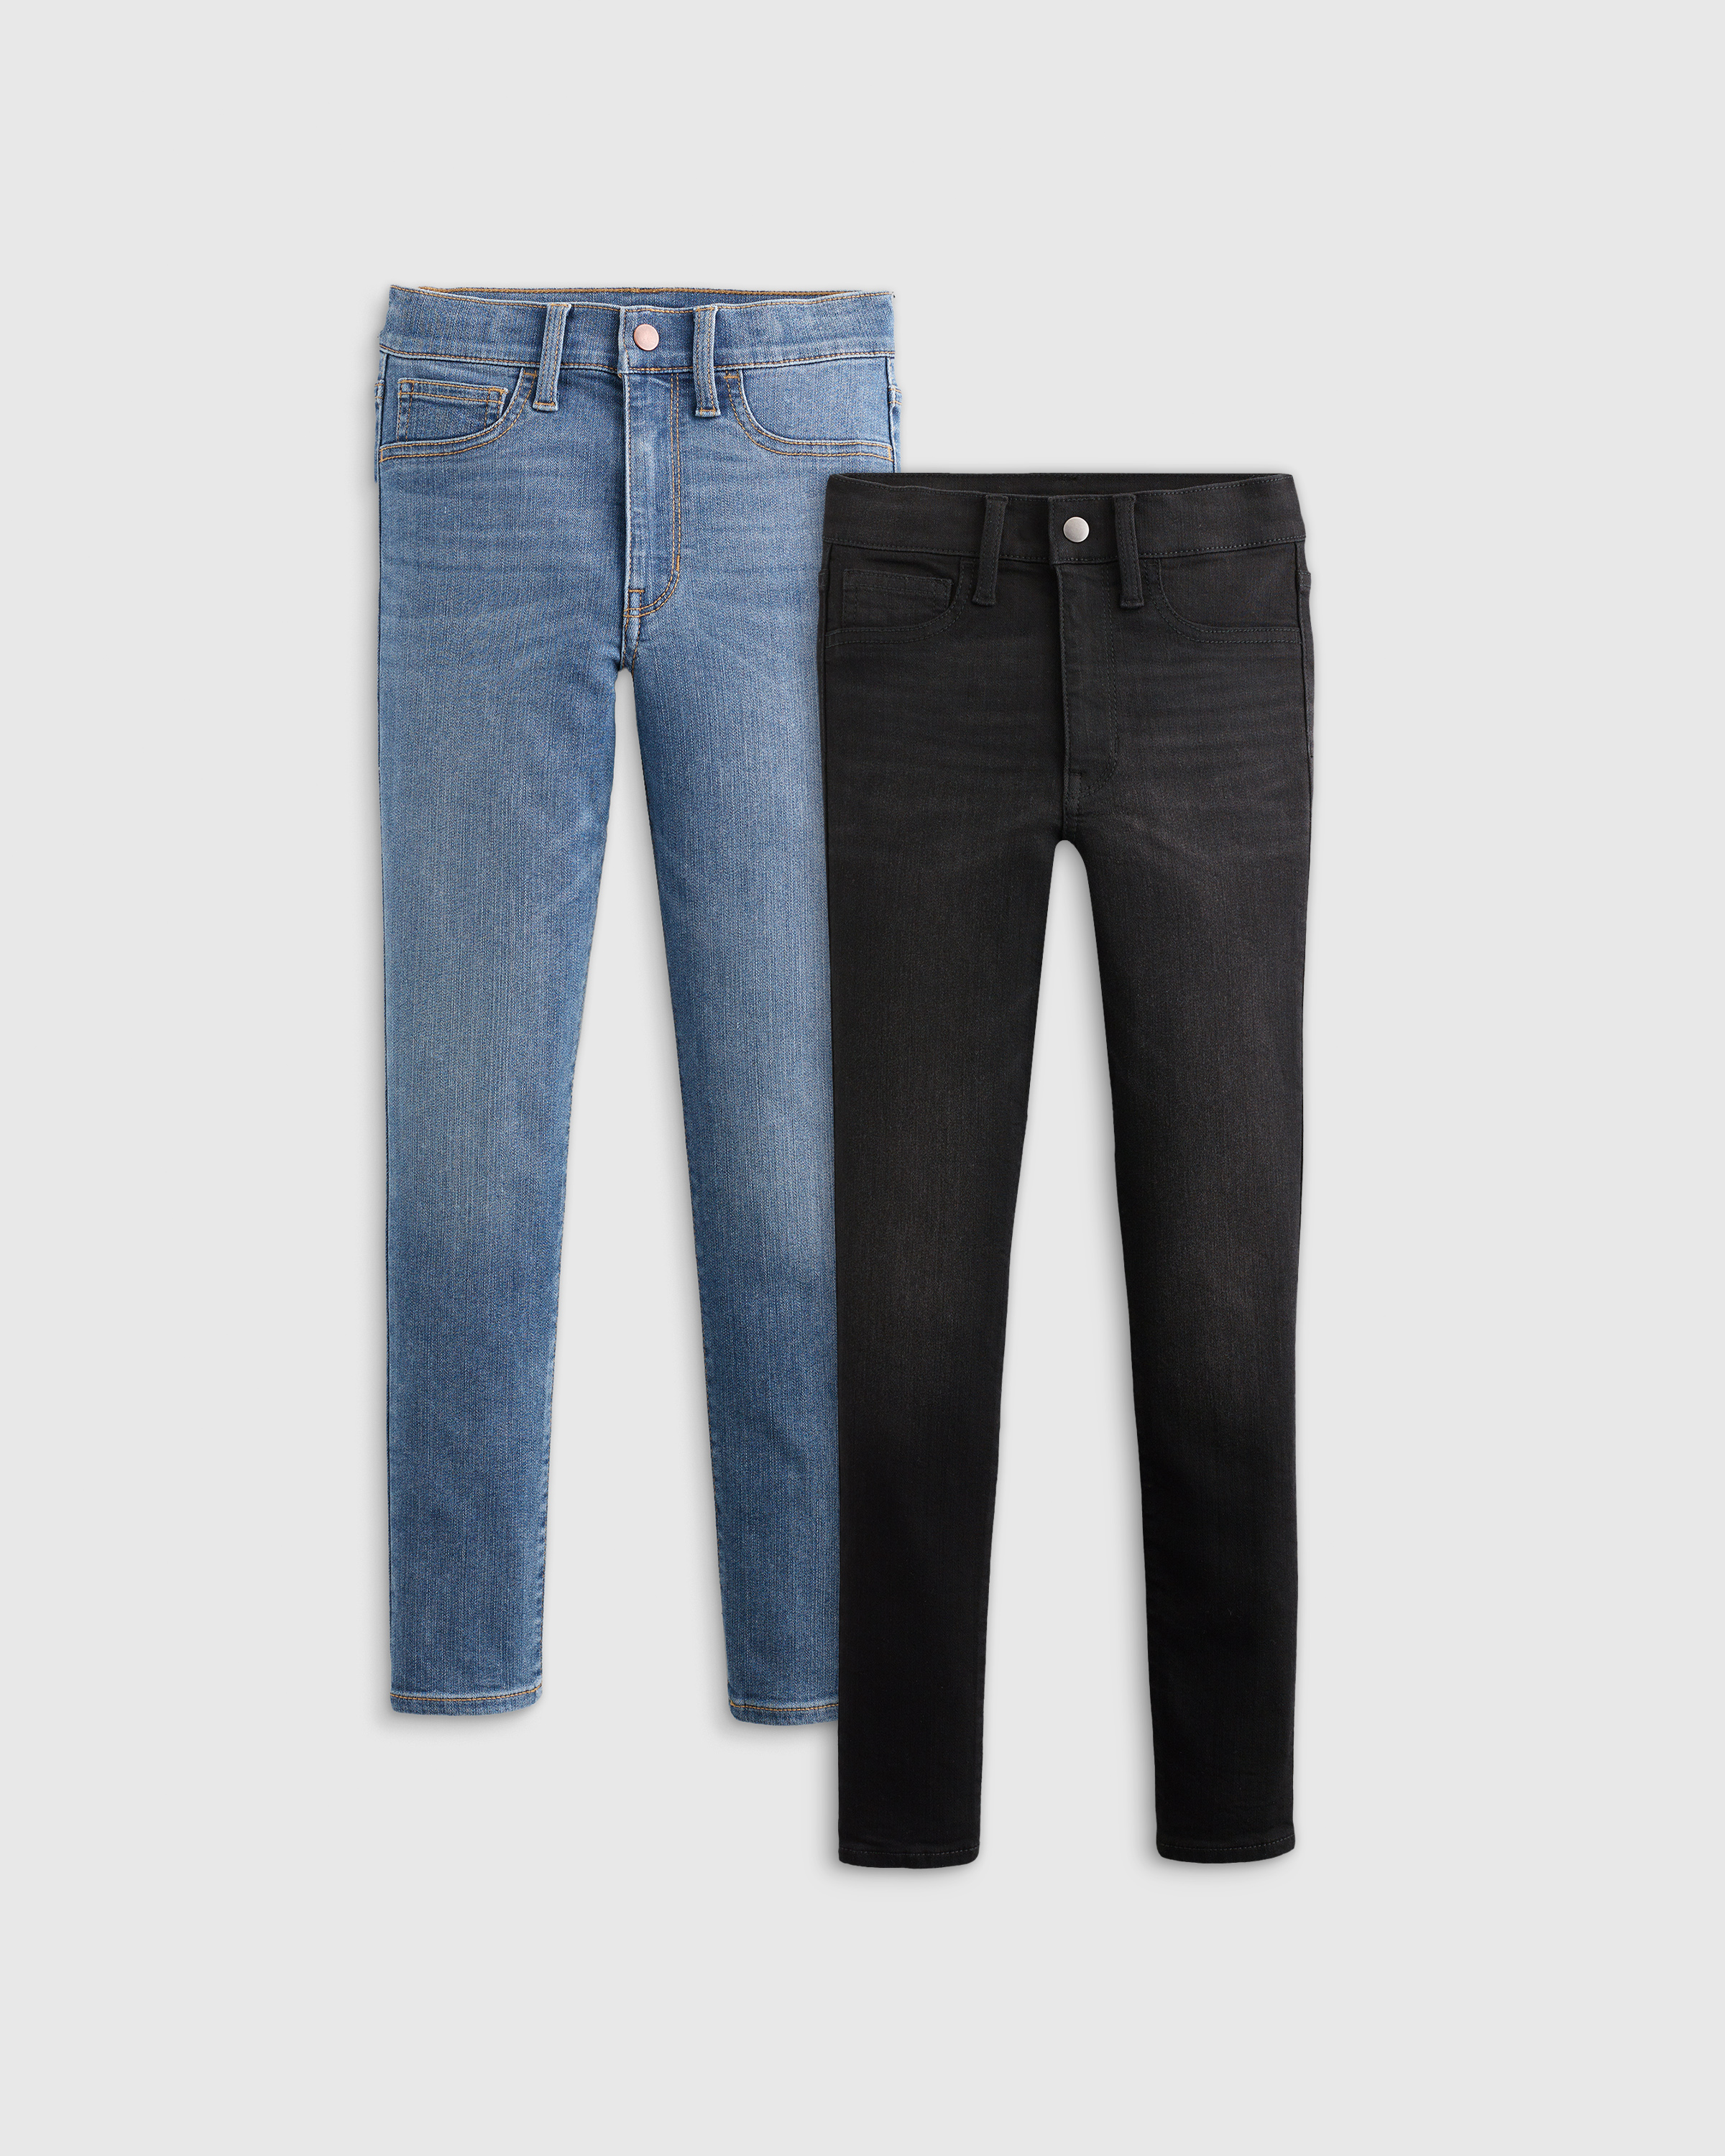 Next Size L Large 16-18 R Bleach Blue Jeans Contour Flex Skinny High Rise  Gift